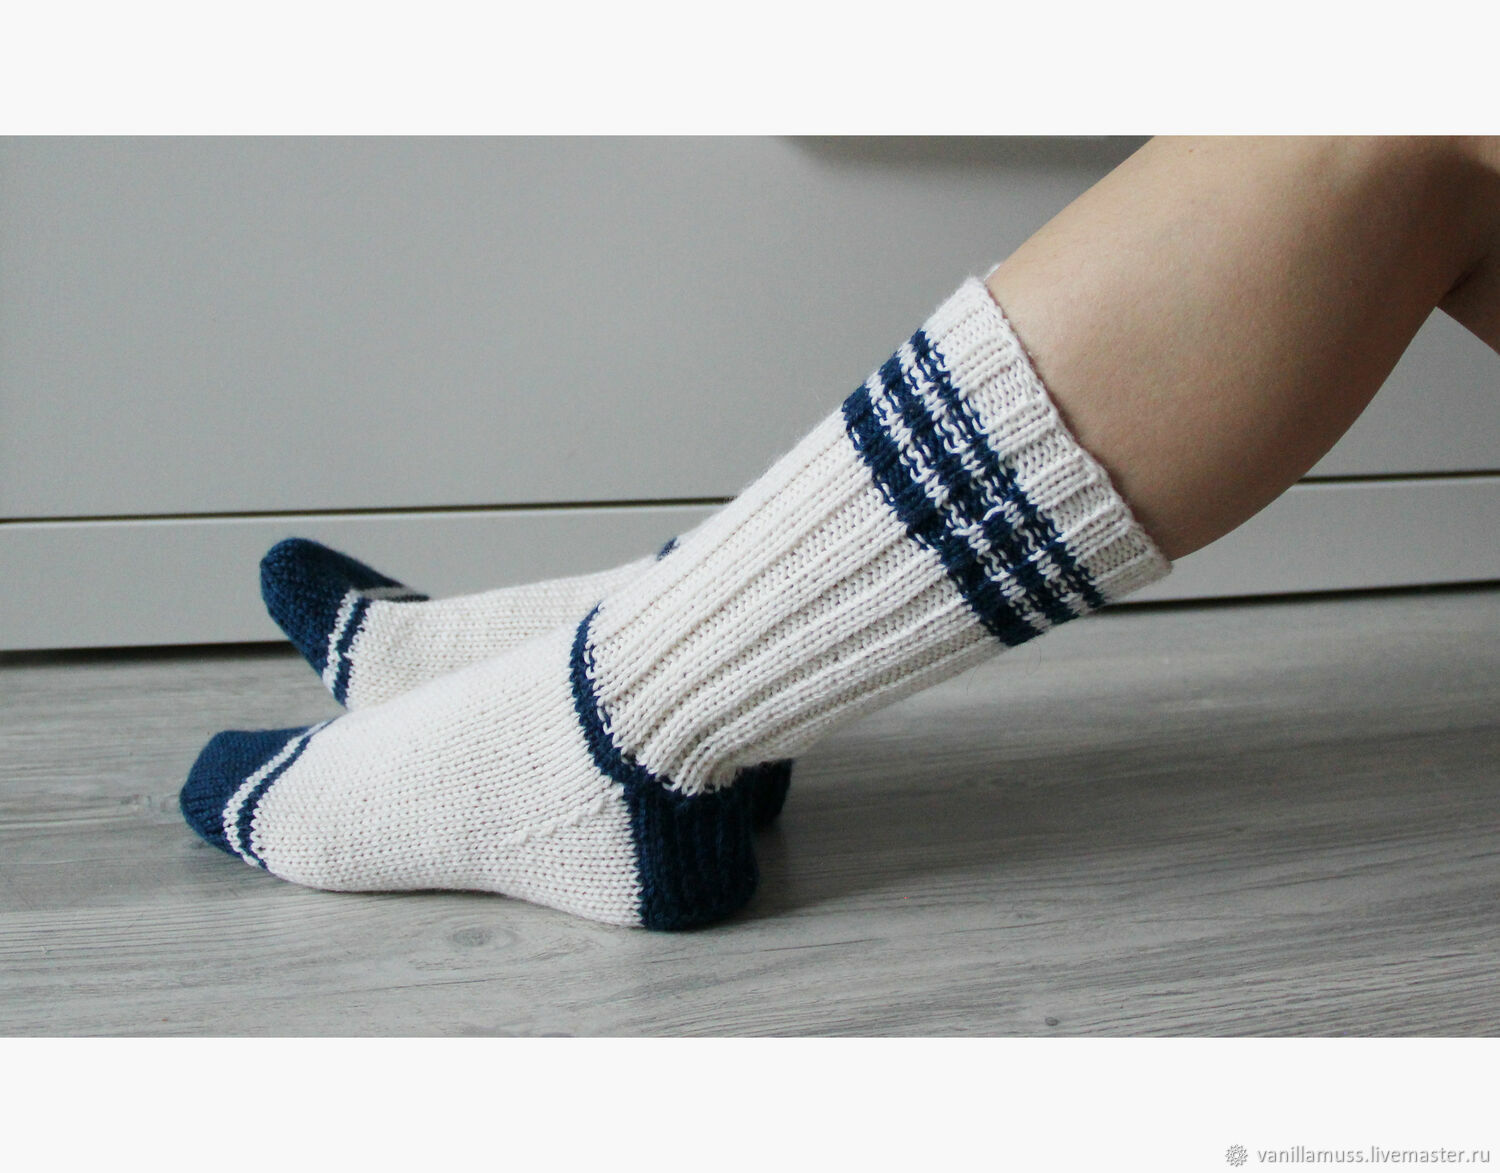 Красивые вязаные носки — модный аксессуар гардероба